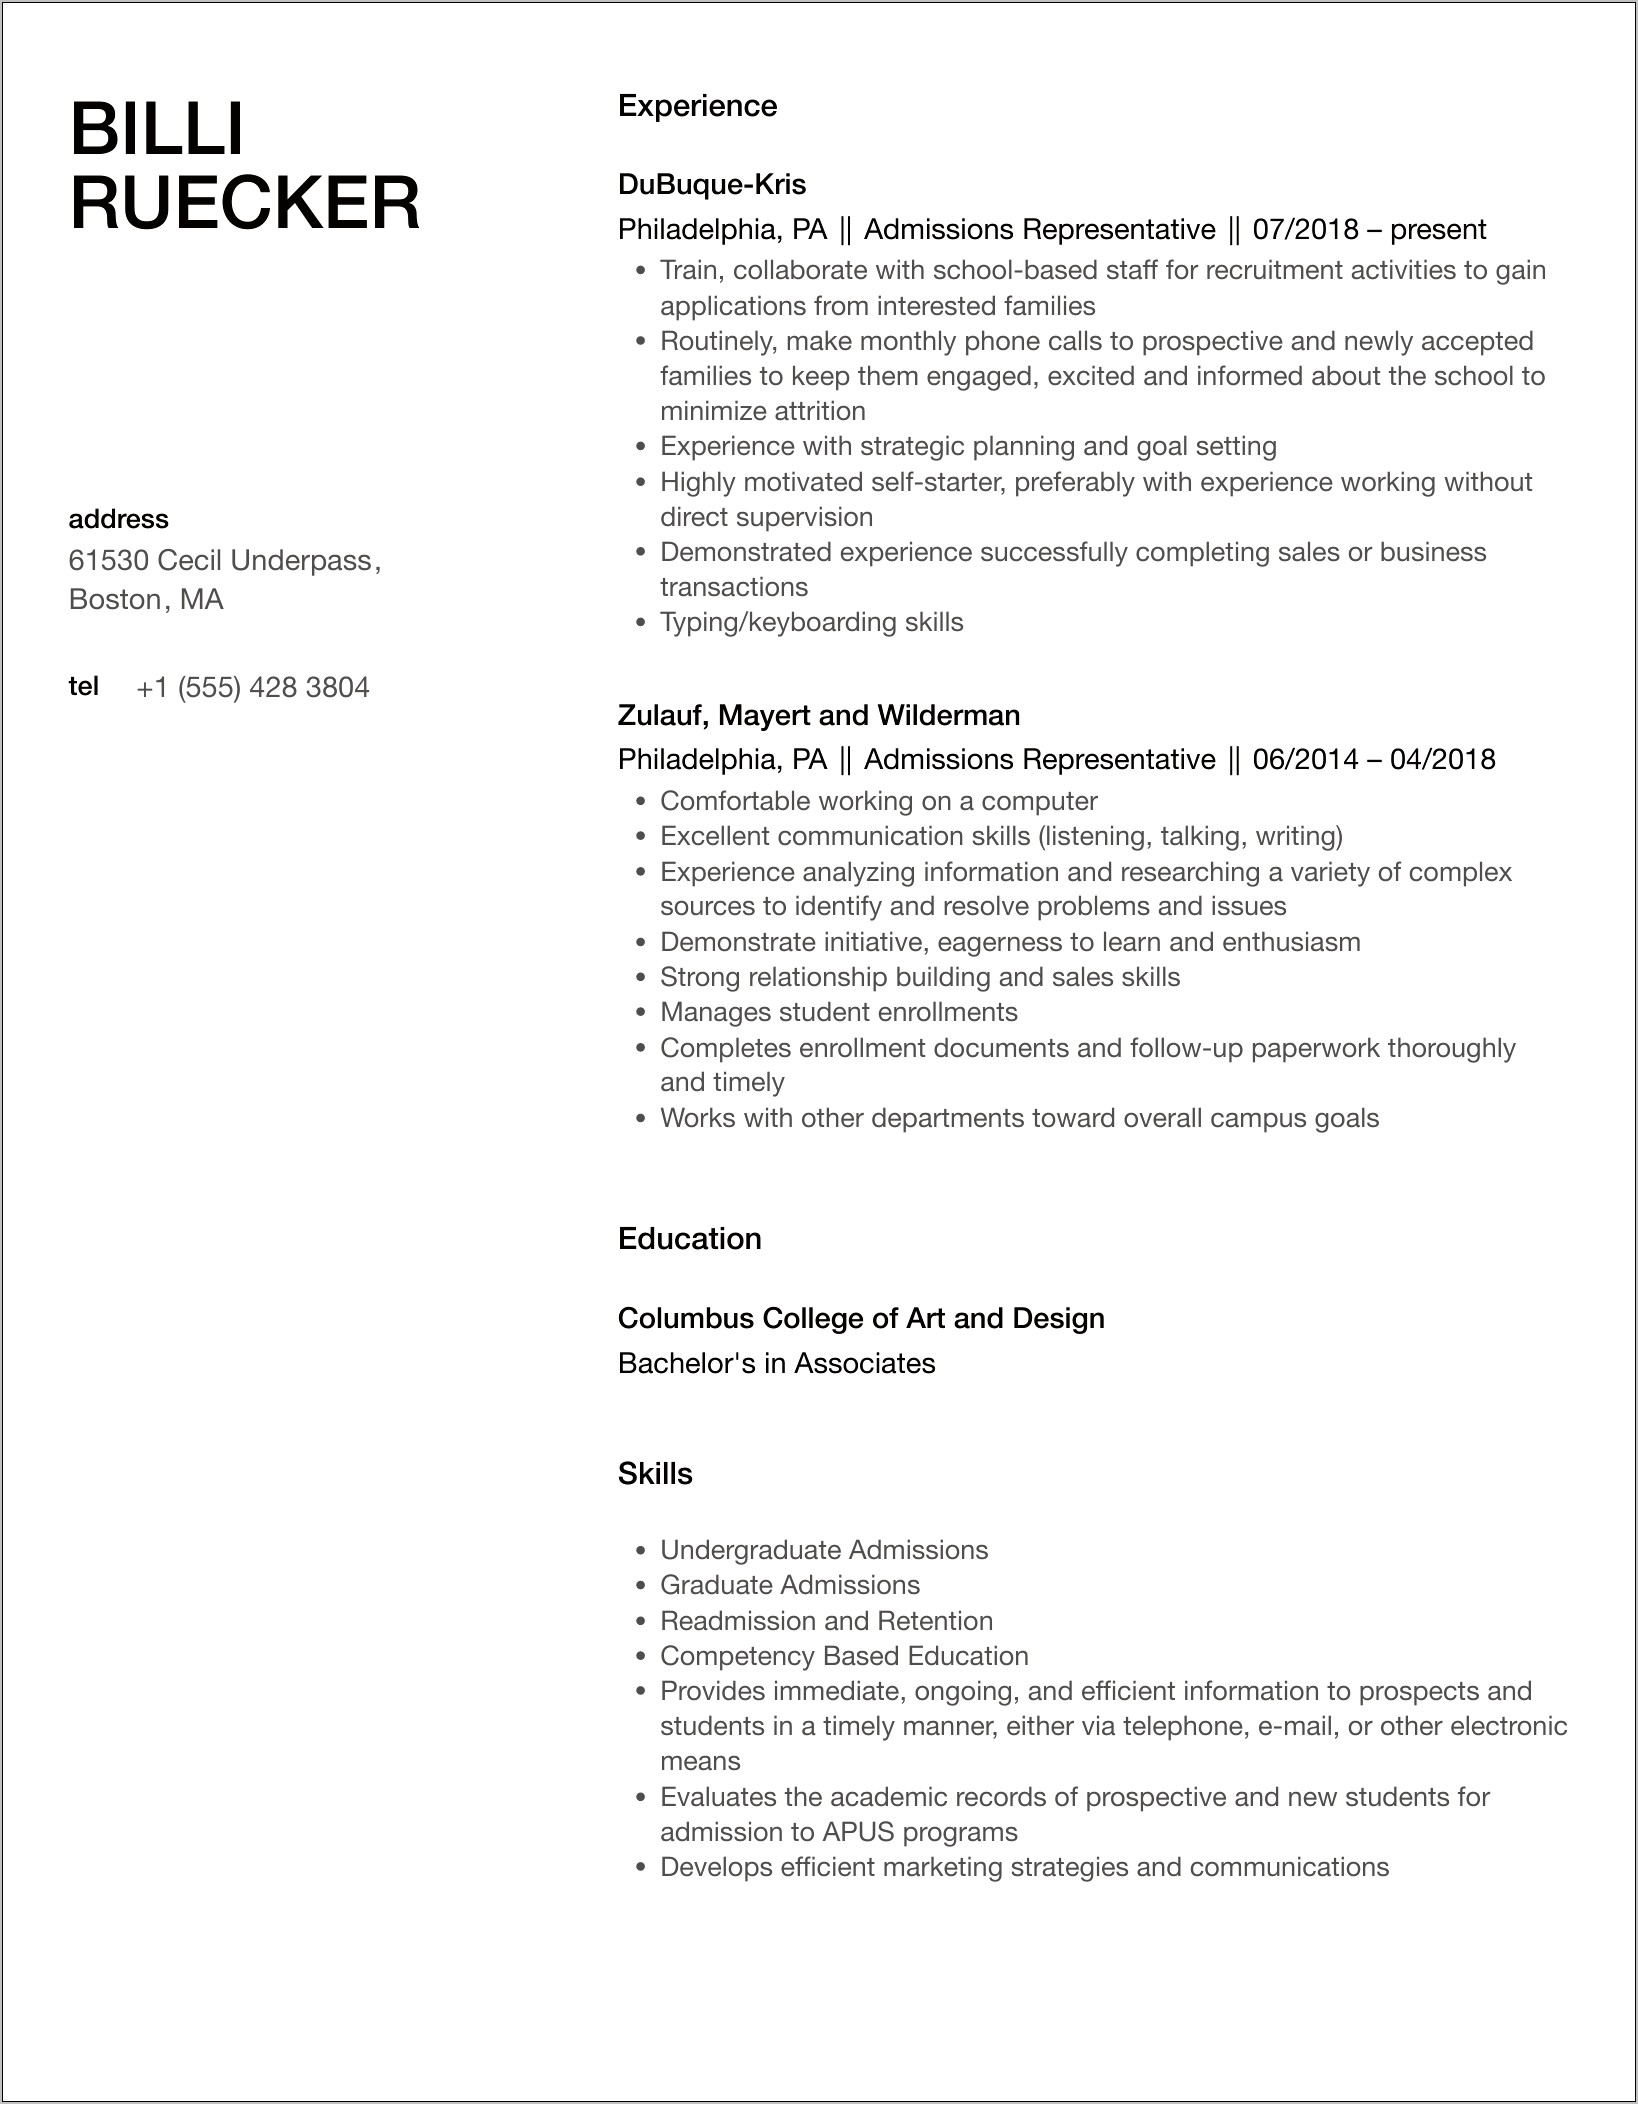 Admissions Representative Job Description Resume